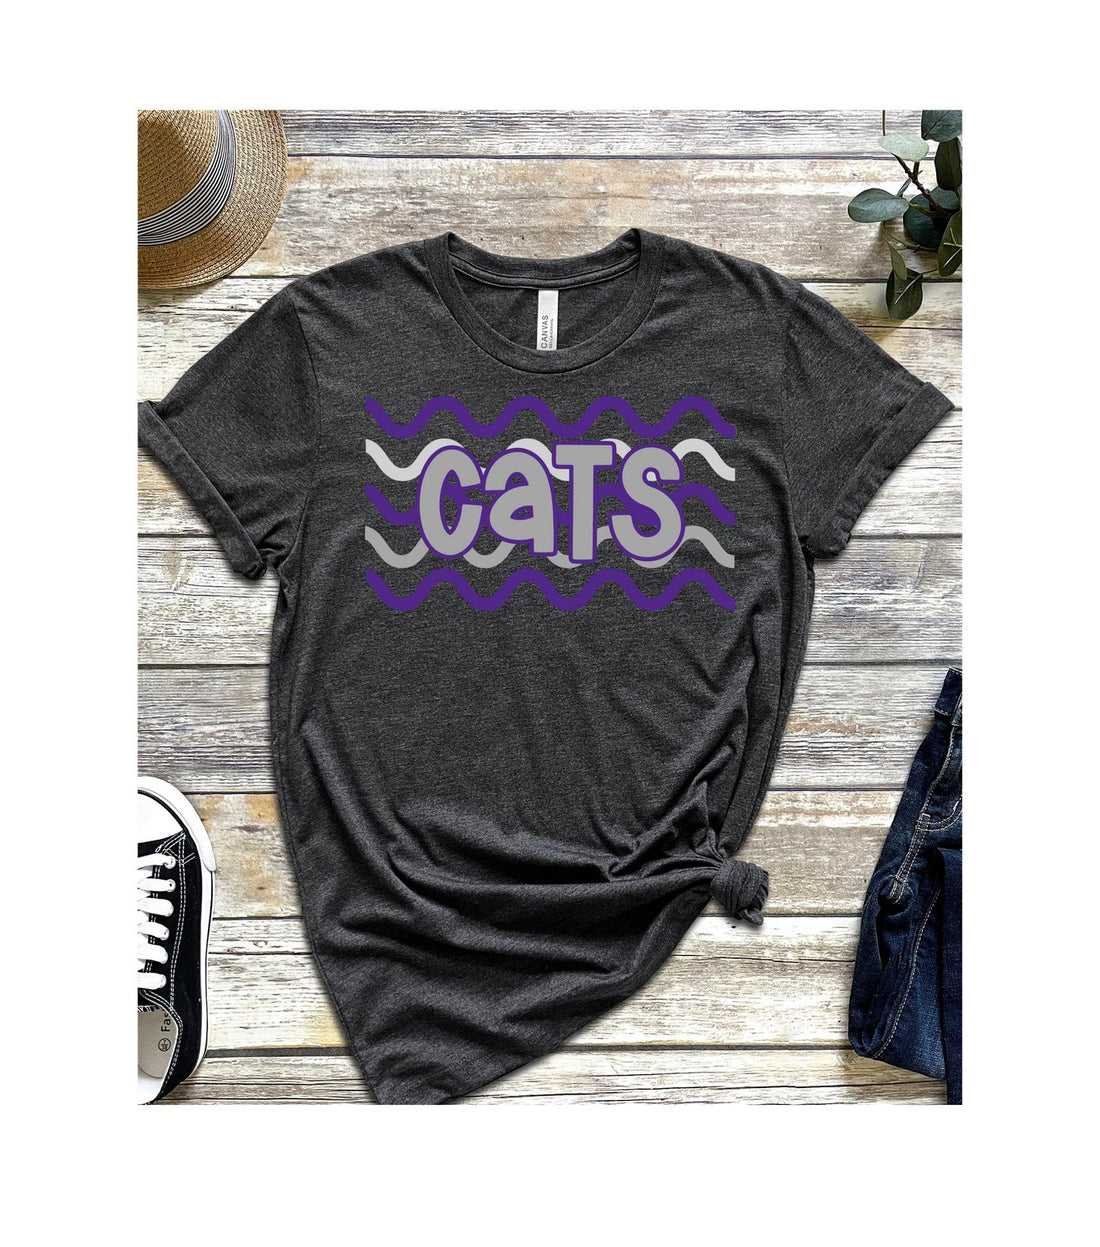 Cats Waves Unisex Jersey Short-Sleeve T-Shirt - T-Shirts - Positively Sassy - Cats Waves Unisex Jersey Short-Sleeve T-Shirt